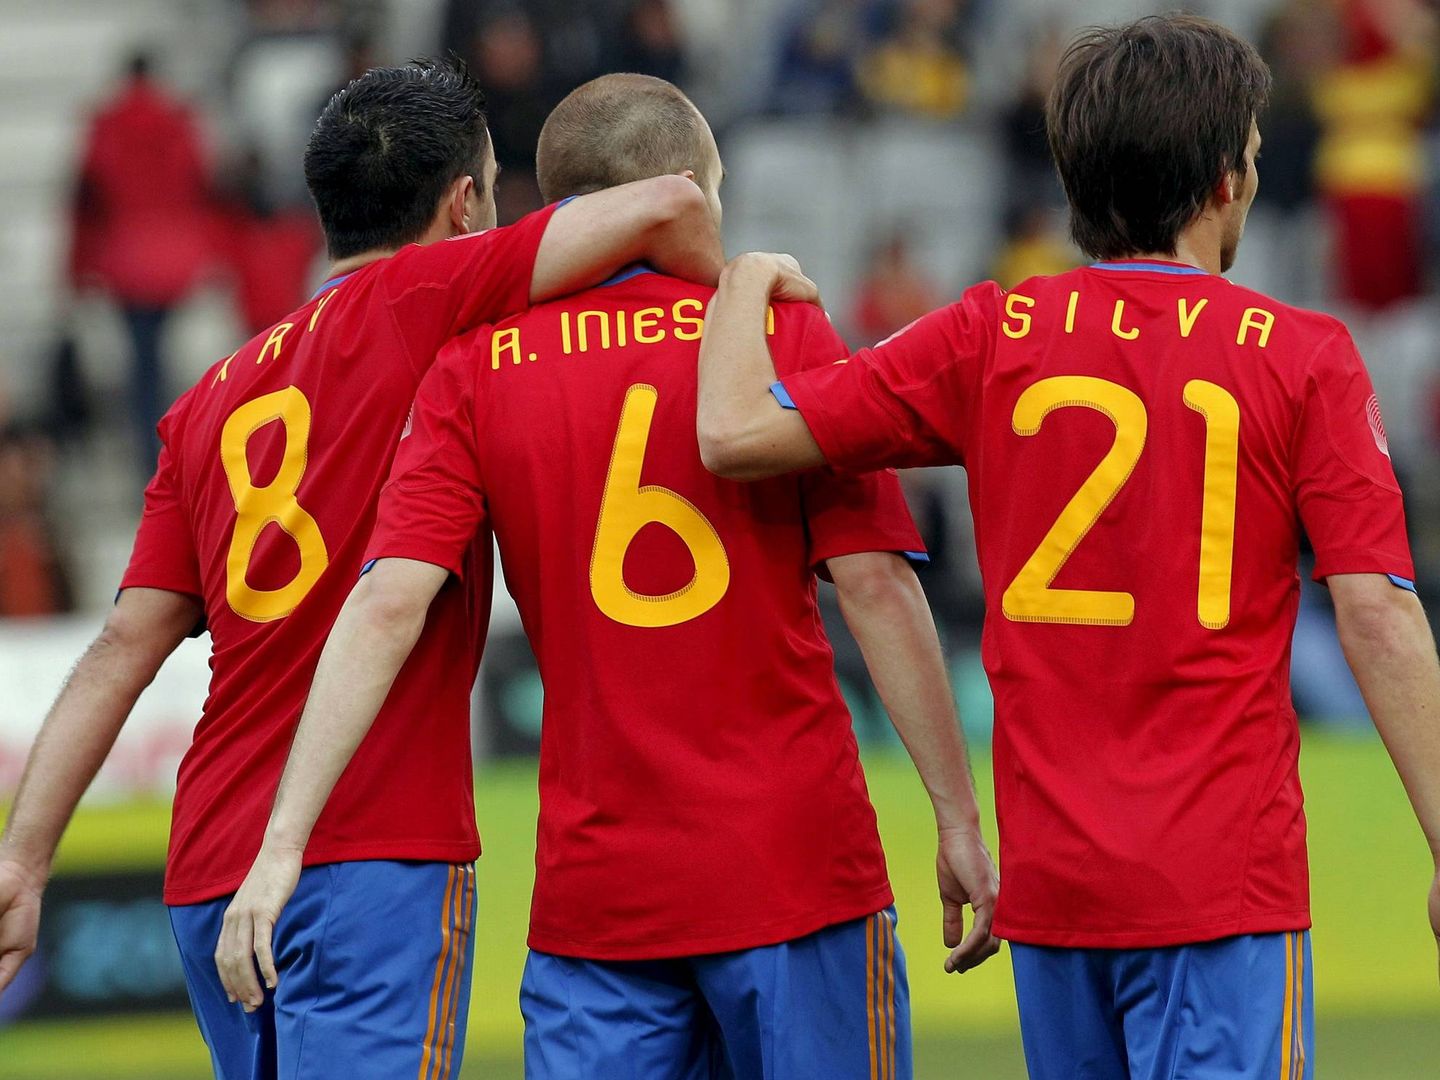 Silva, en la imagen junto a Xavi e Iniesta, ha sido uno de los jugadores más importantes de la historia de la Selección española. (EFE)